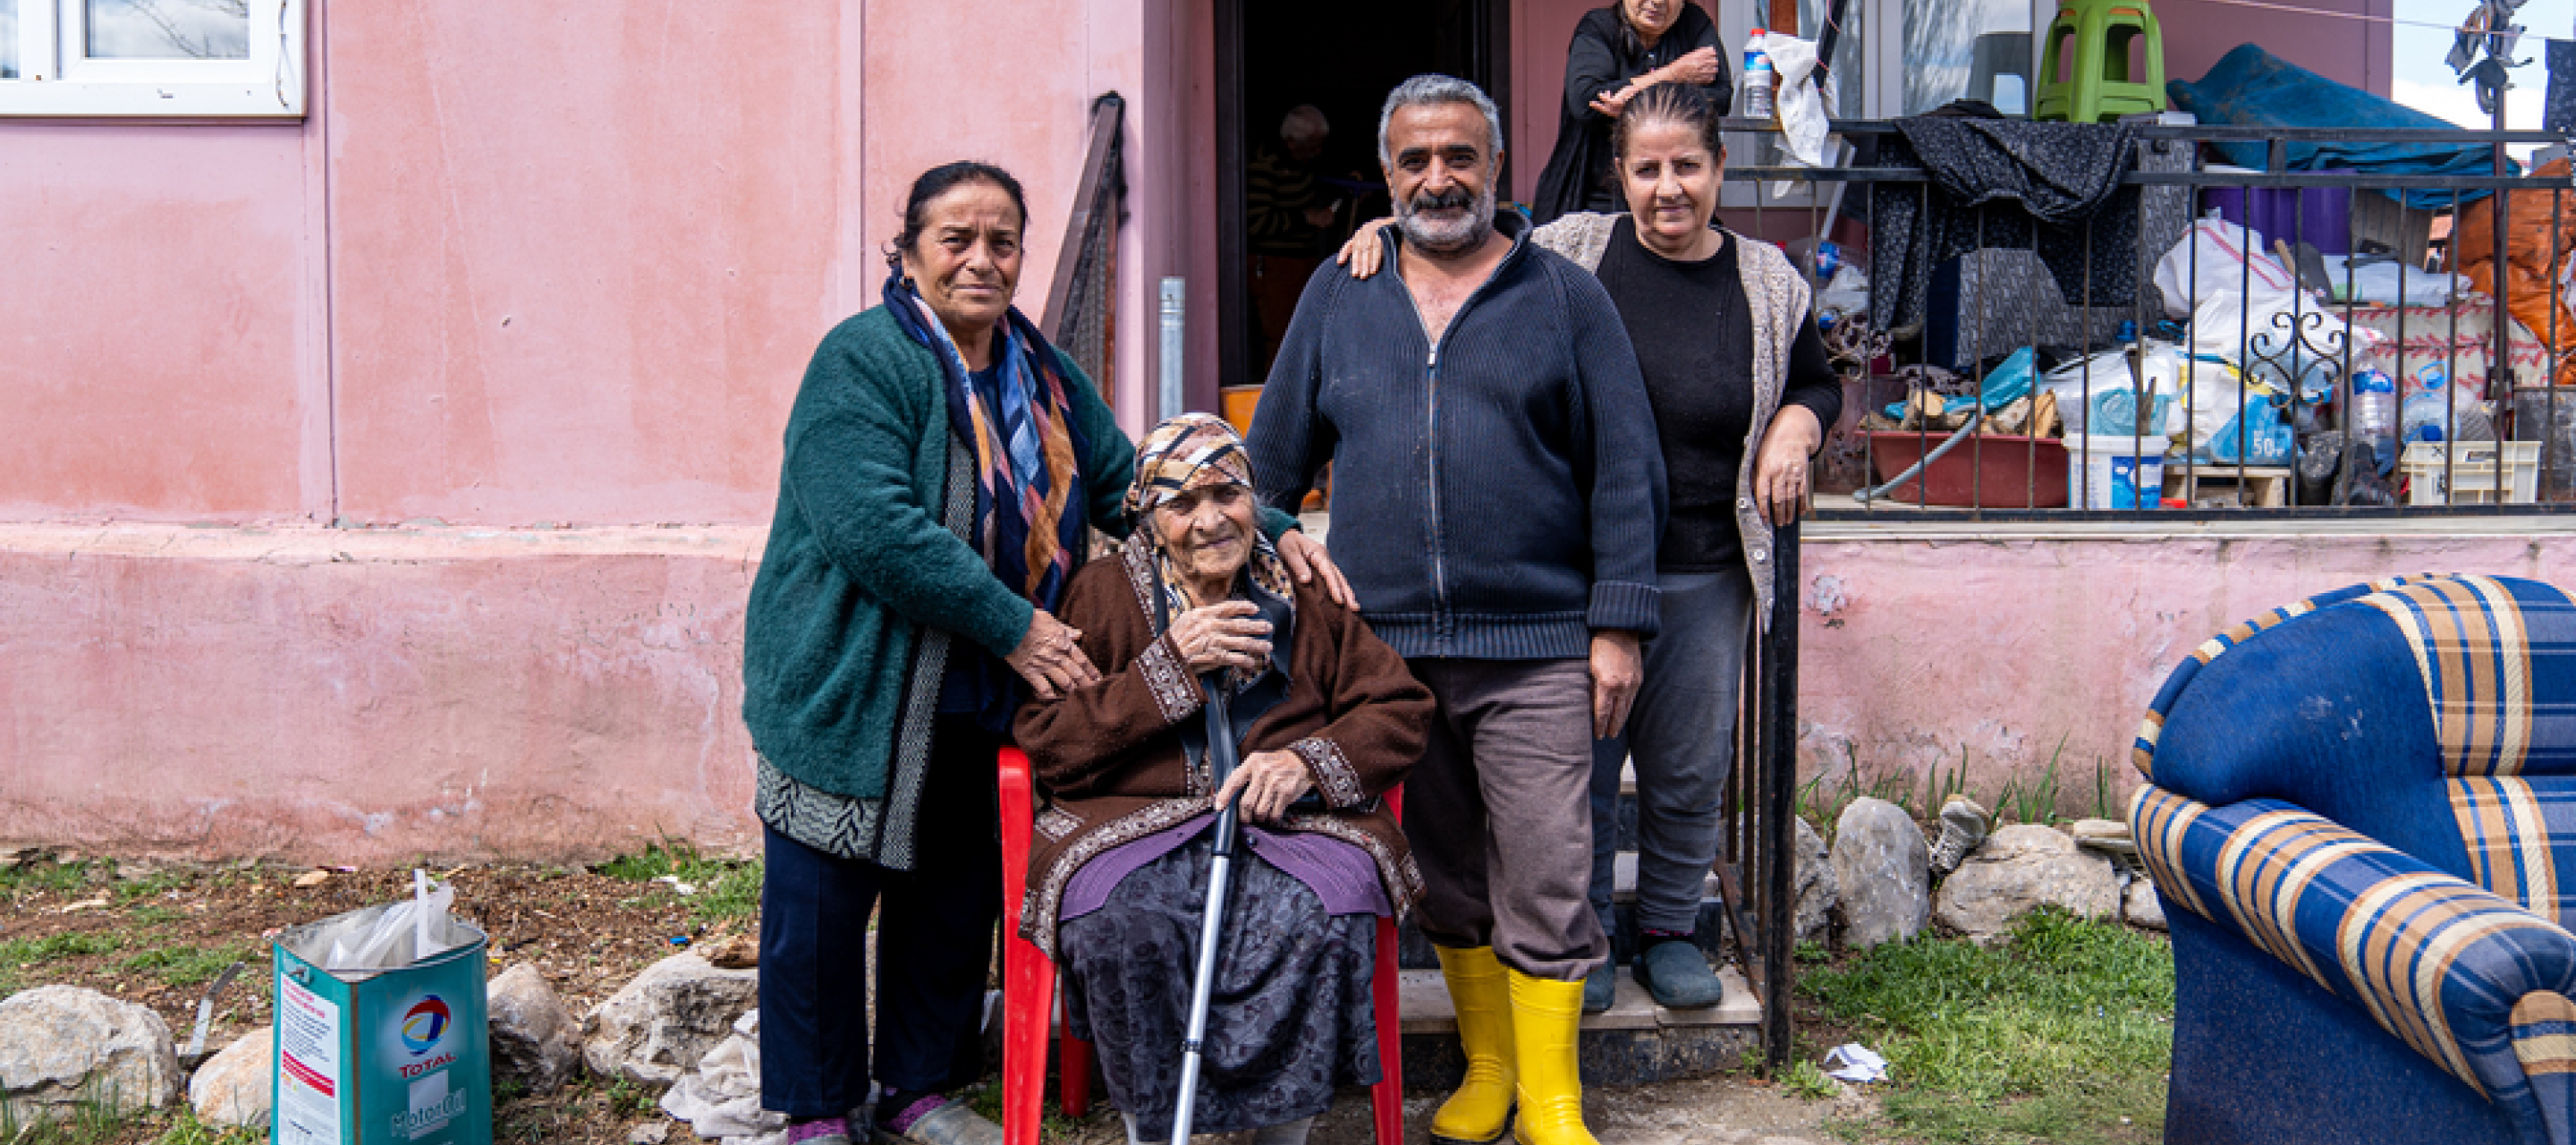 Familie vor zerstörtem Haus Erdbeben Türkei